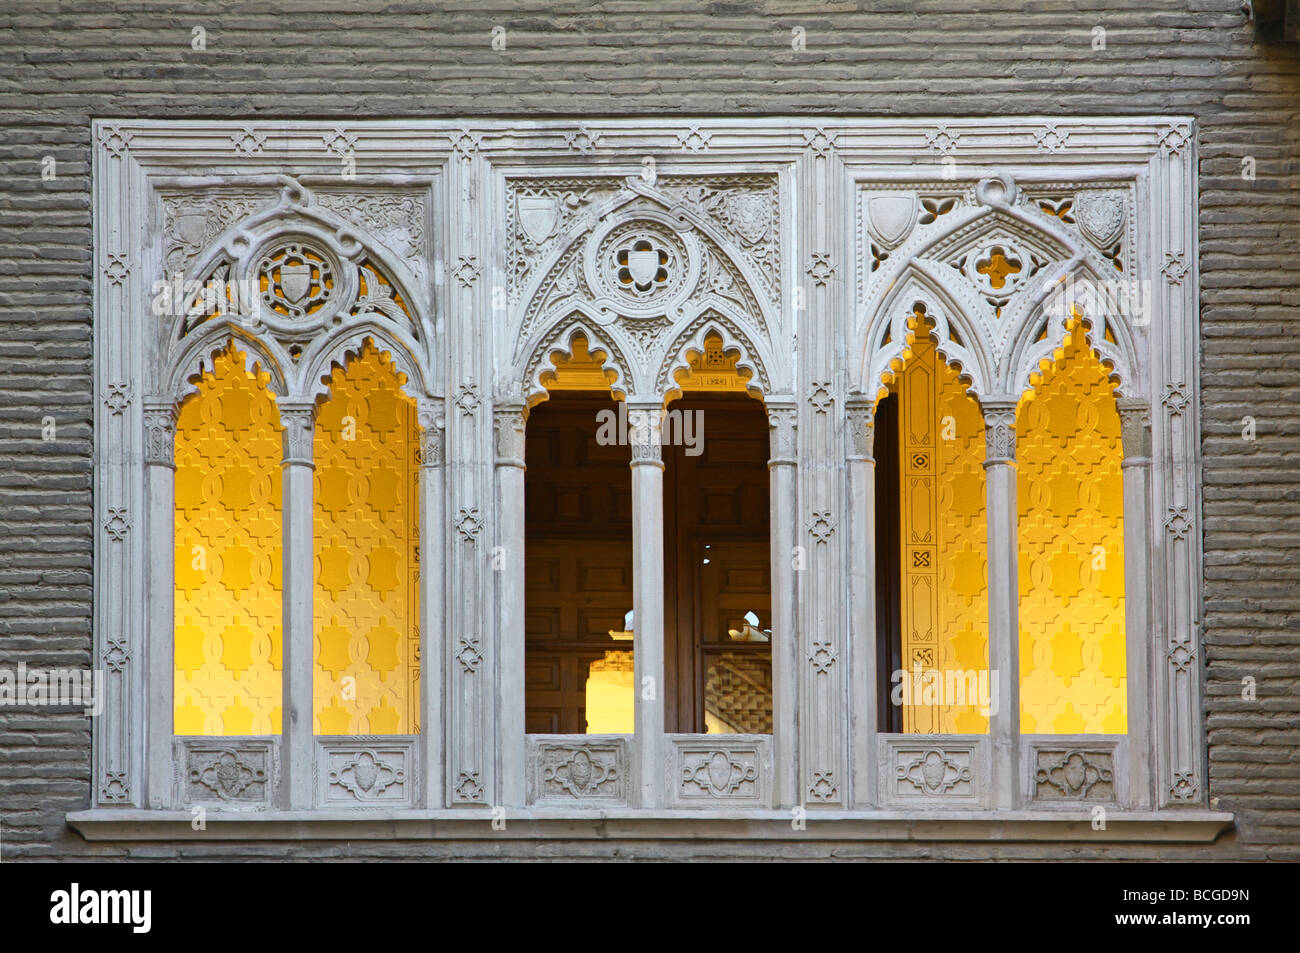 L'architecture. Arches de la fenêtre de conception. Église de la Seo. Saragosse. Aragona Province. L'Espagne, l'Europe Banque D'Images